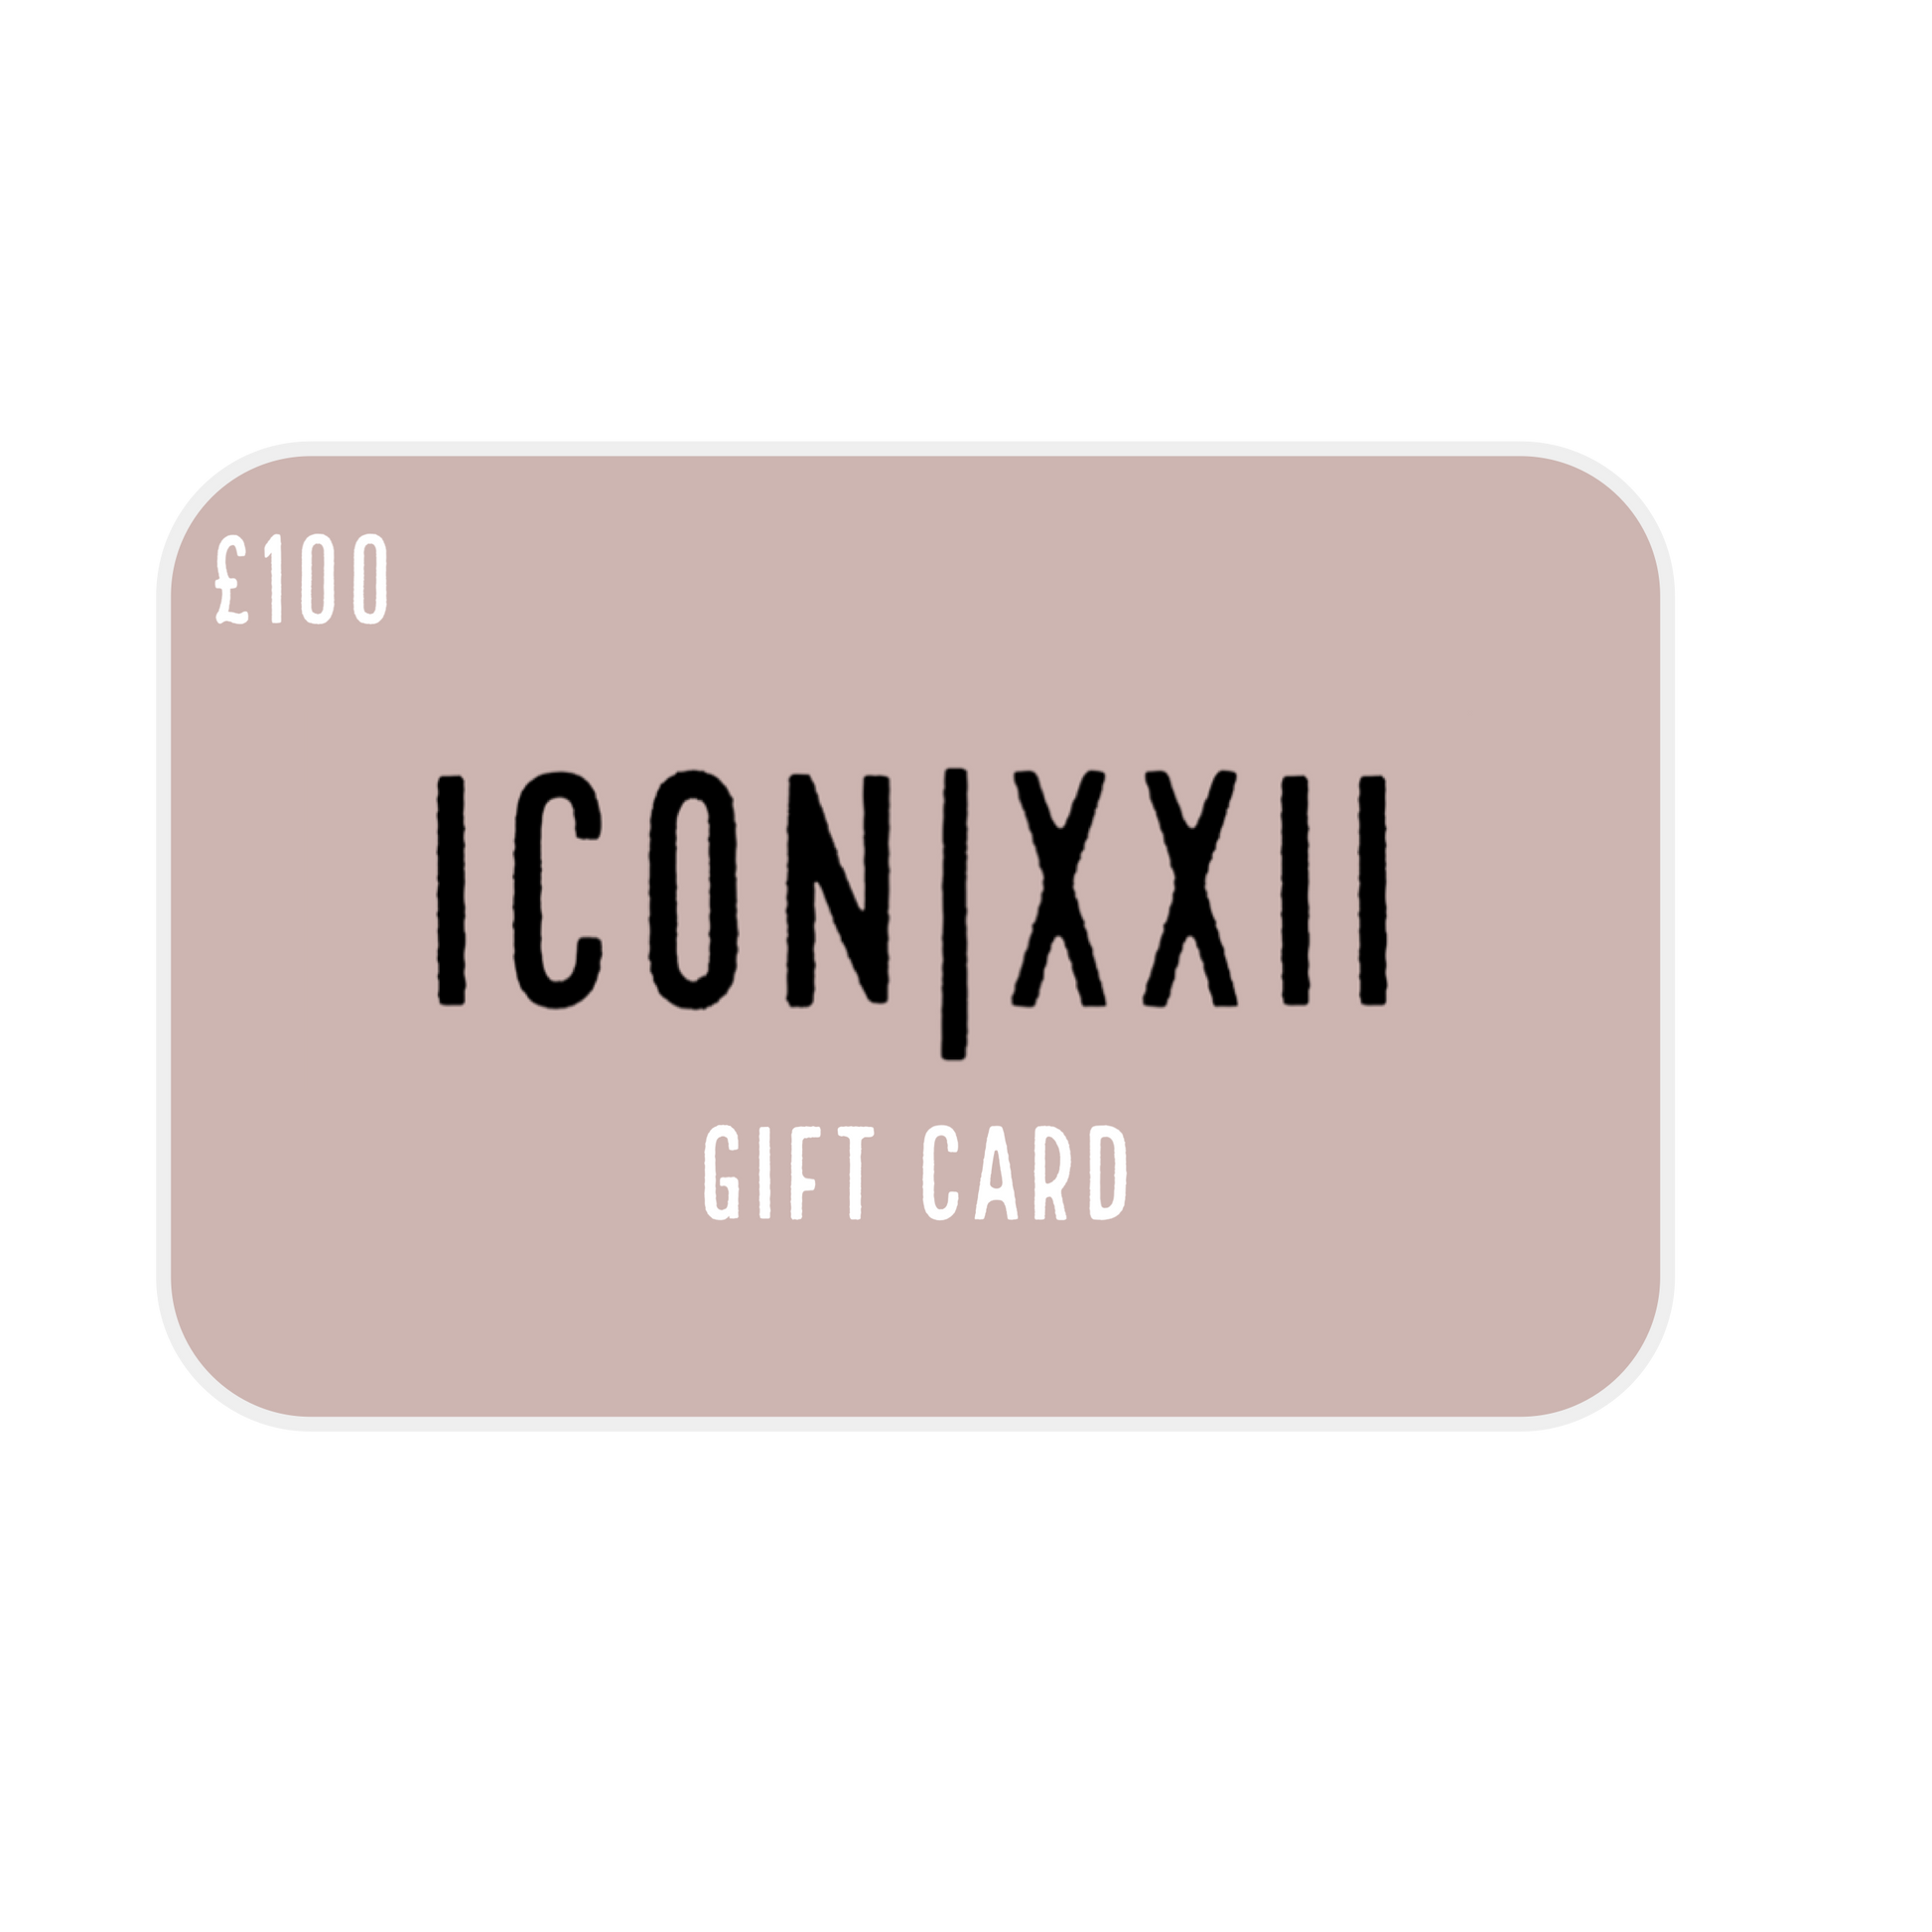 ICON|XXII Gift Card - ICON|XXII